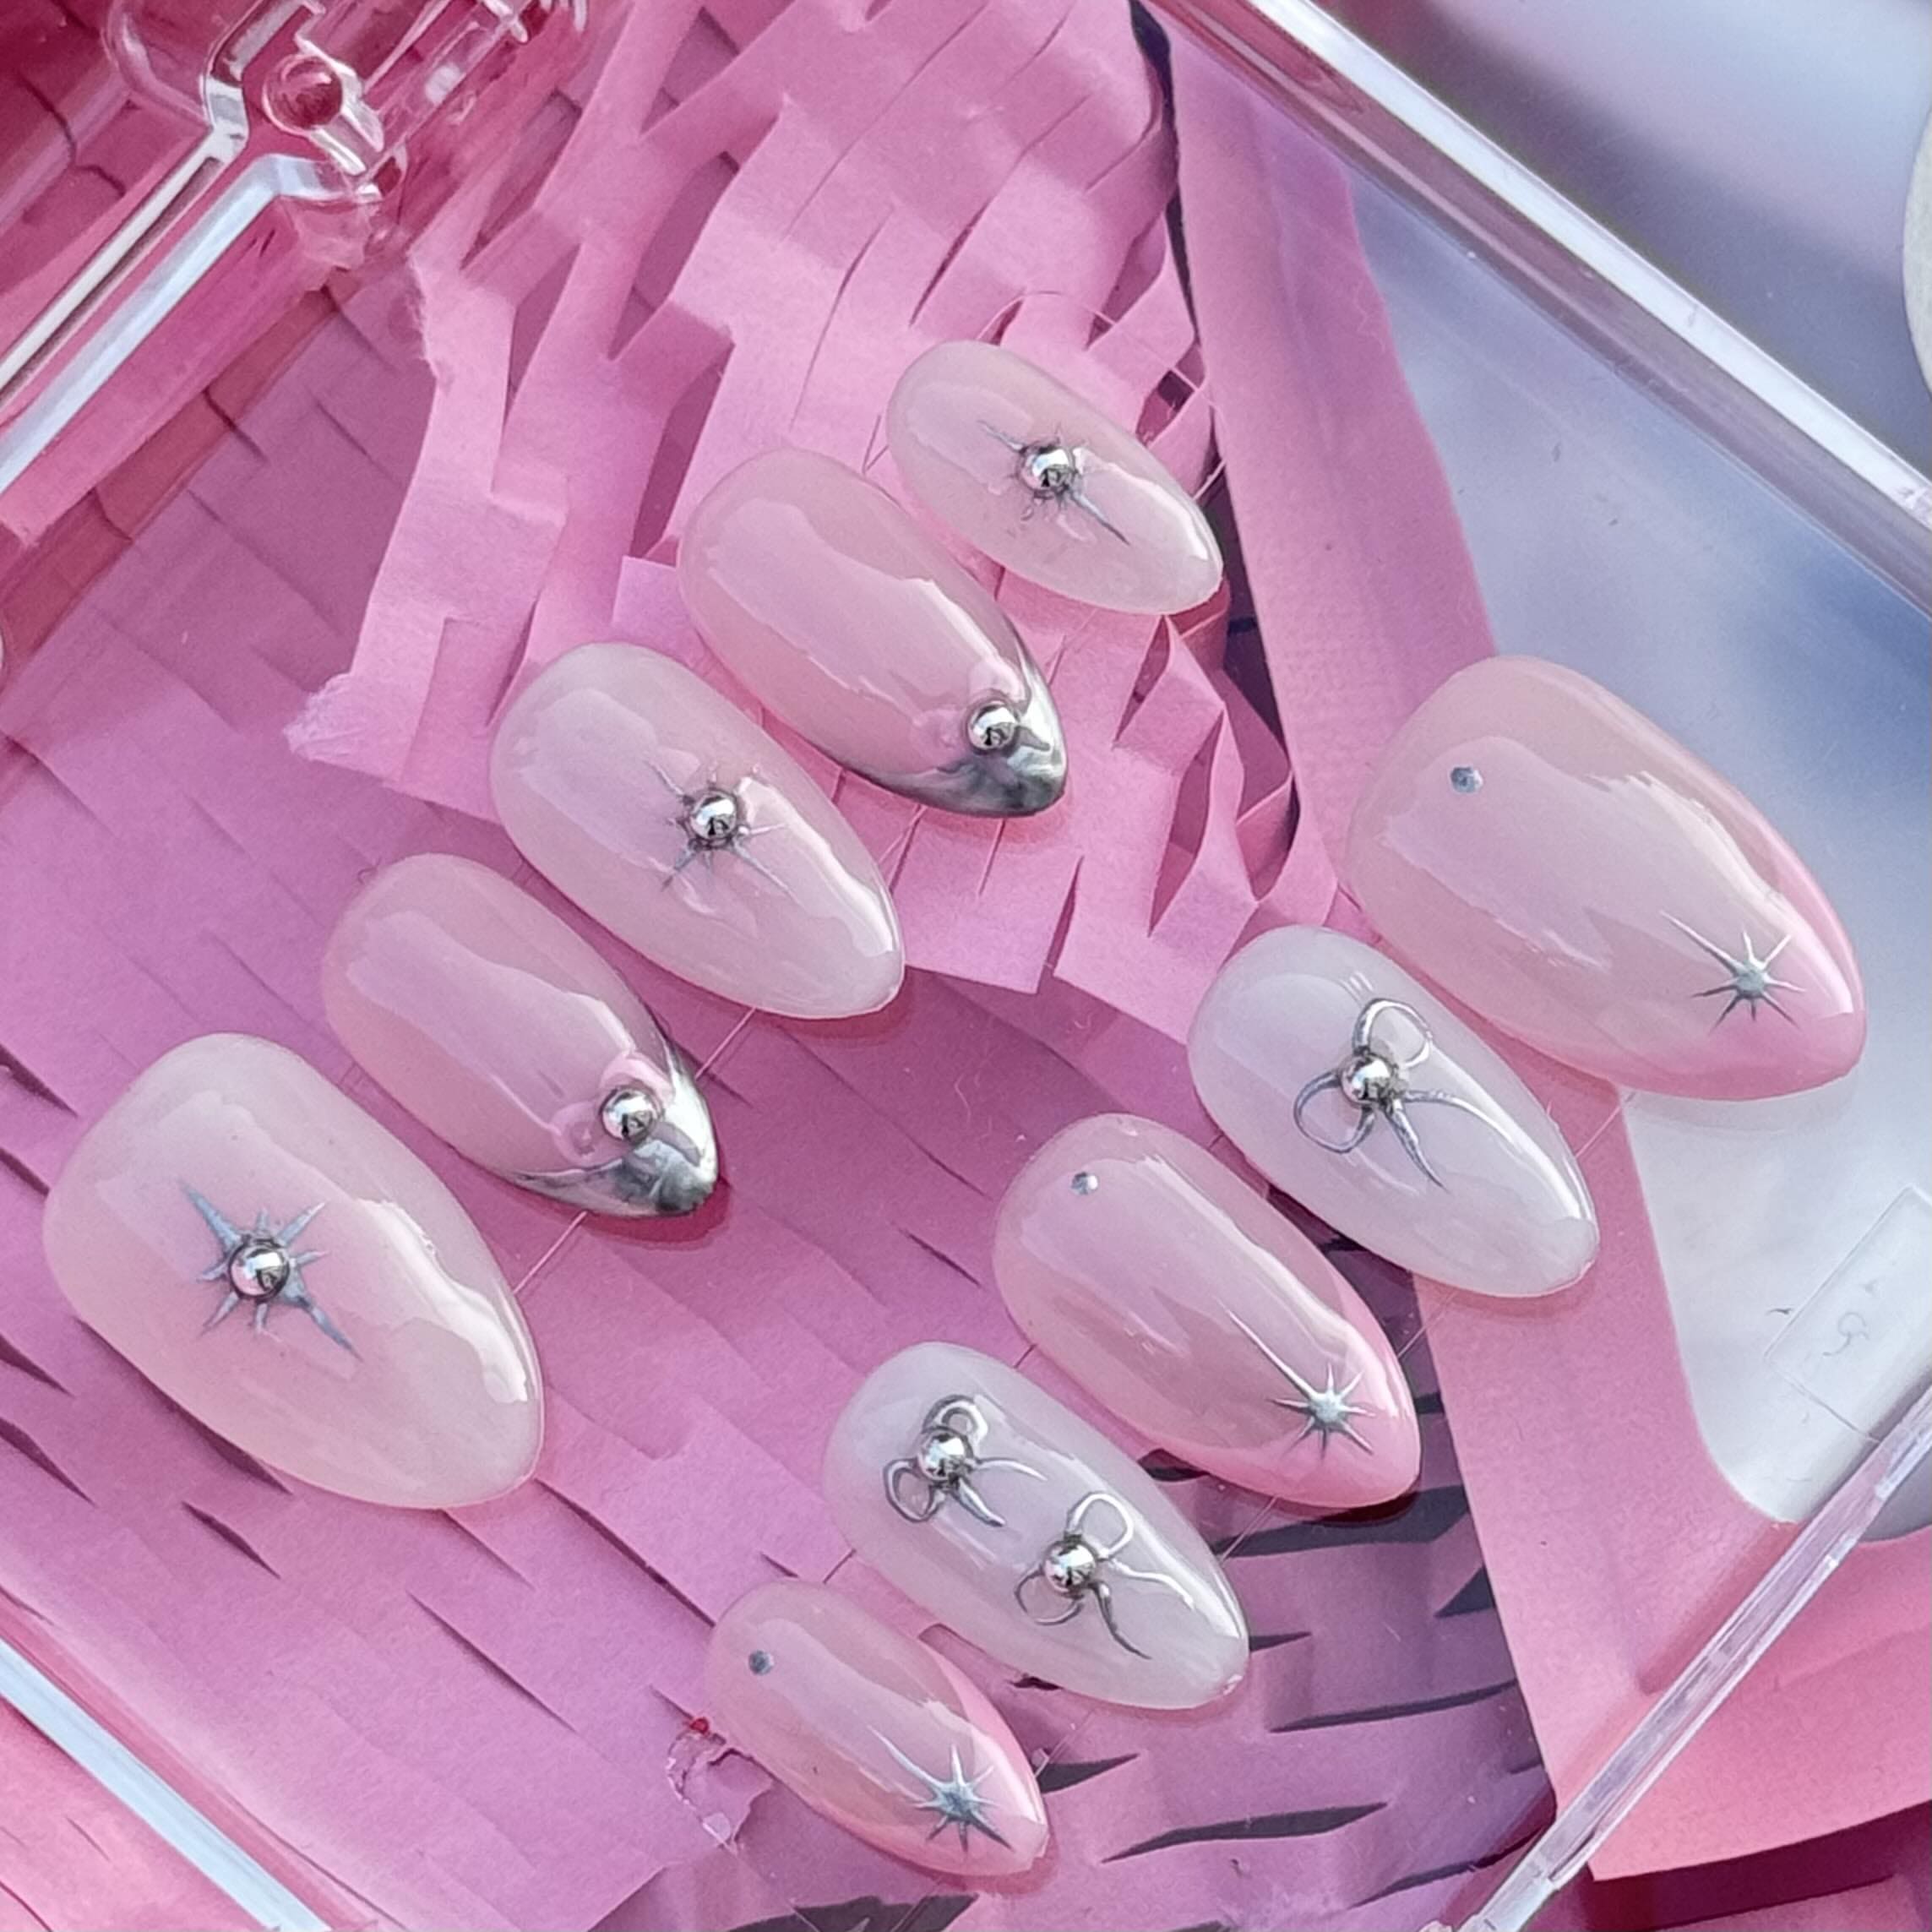 Baby Pink Kaws| Short Square Light Pink Kaws Inspired Nails